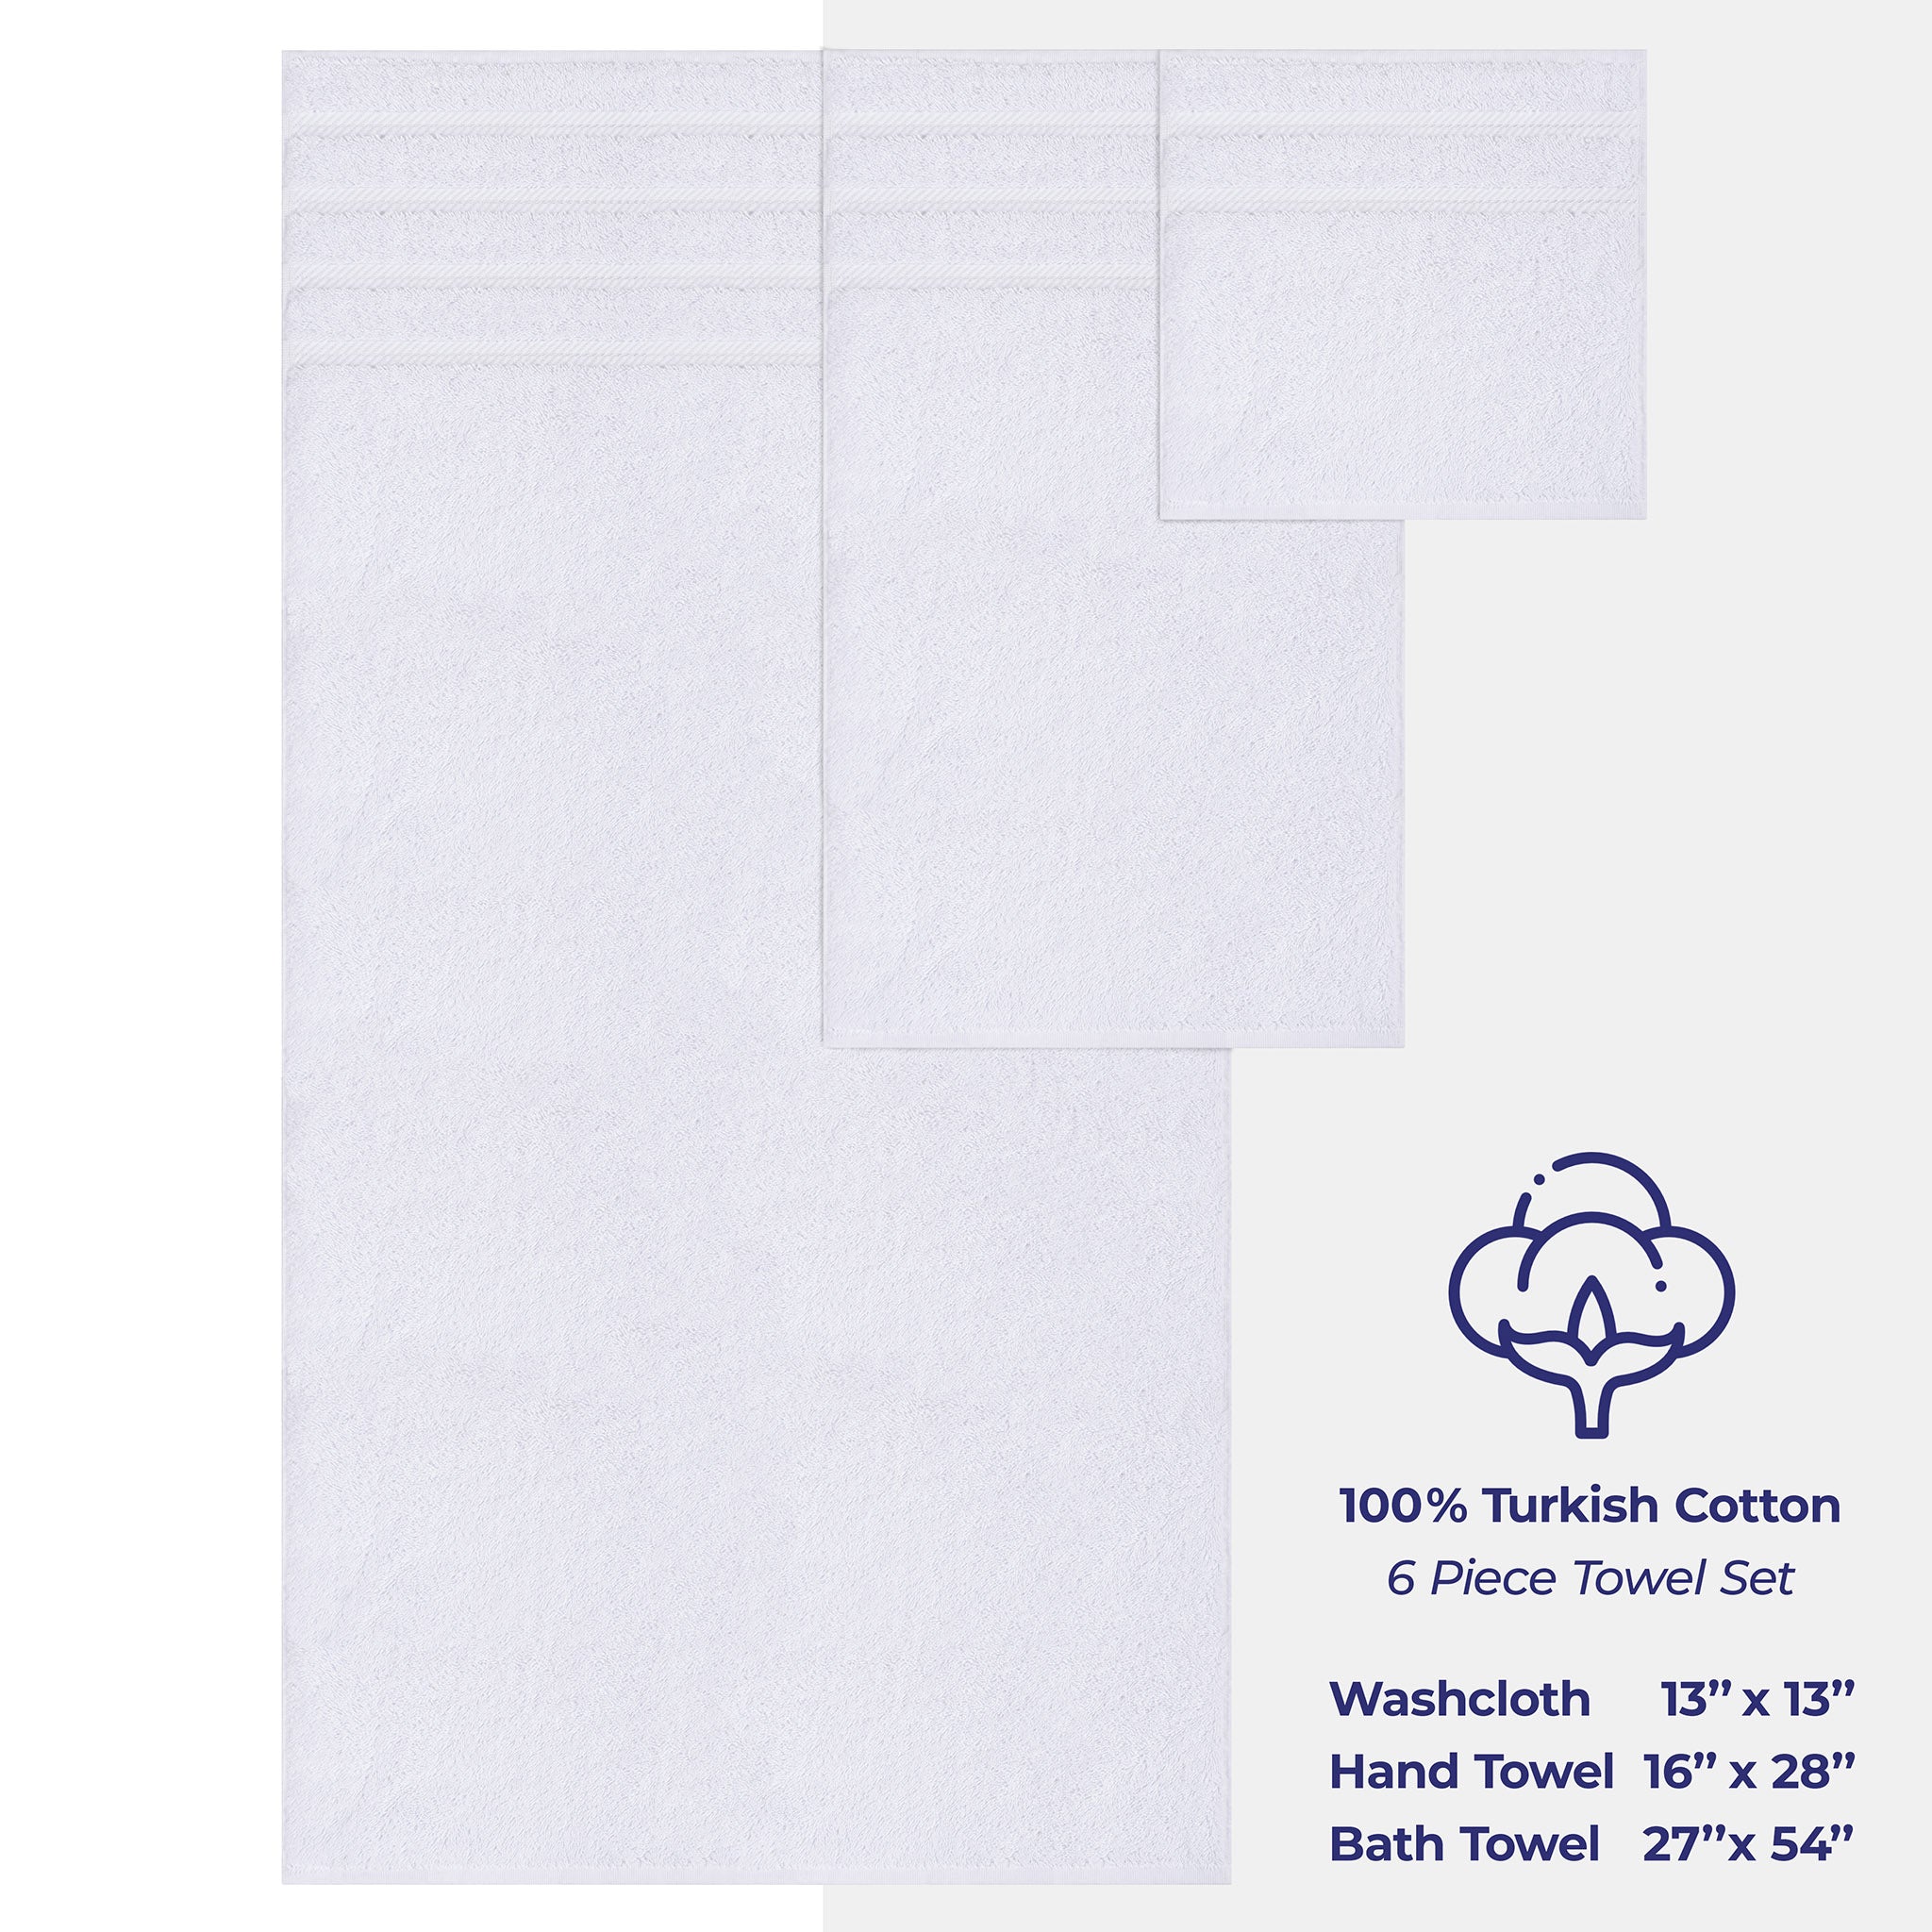 American Soft Linen 100% Turkish Cotton 6 Piece Towel Set Wholesale white-4